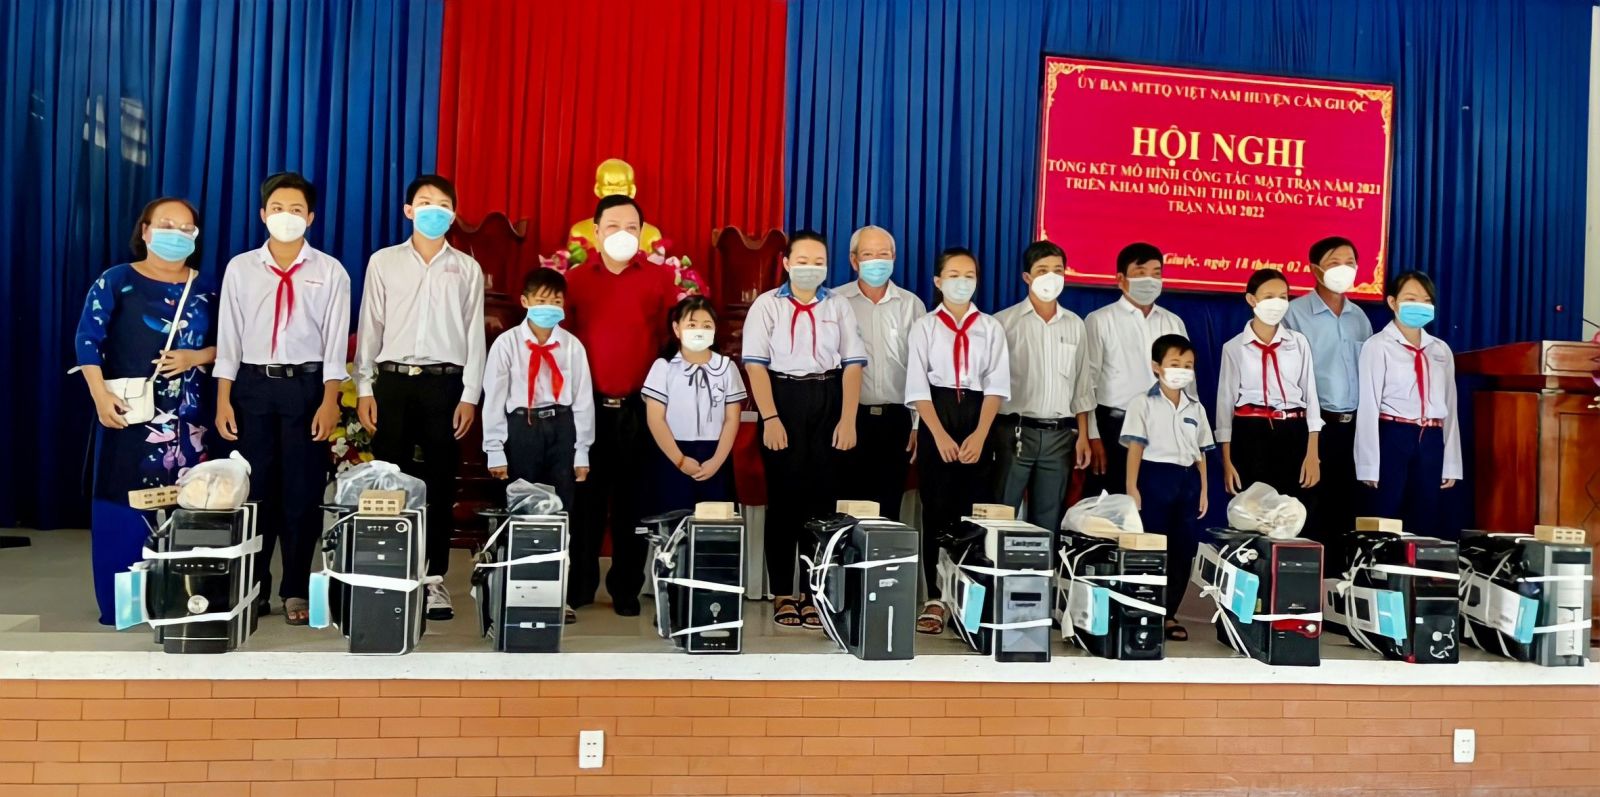 UBMTTQ Việt Nam huyện Cần Giuộc tặng máy tính cho học sinh, sinh viên có hoàn cảnh khó khăn